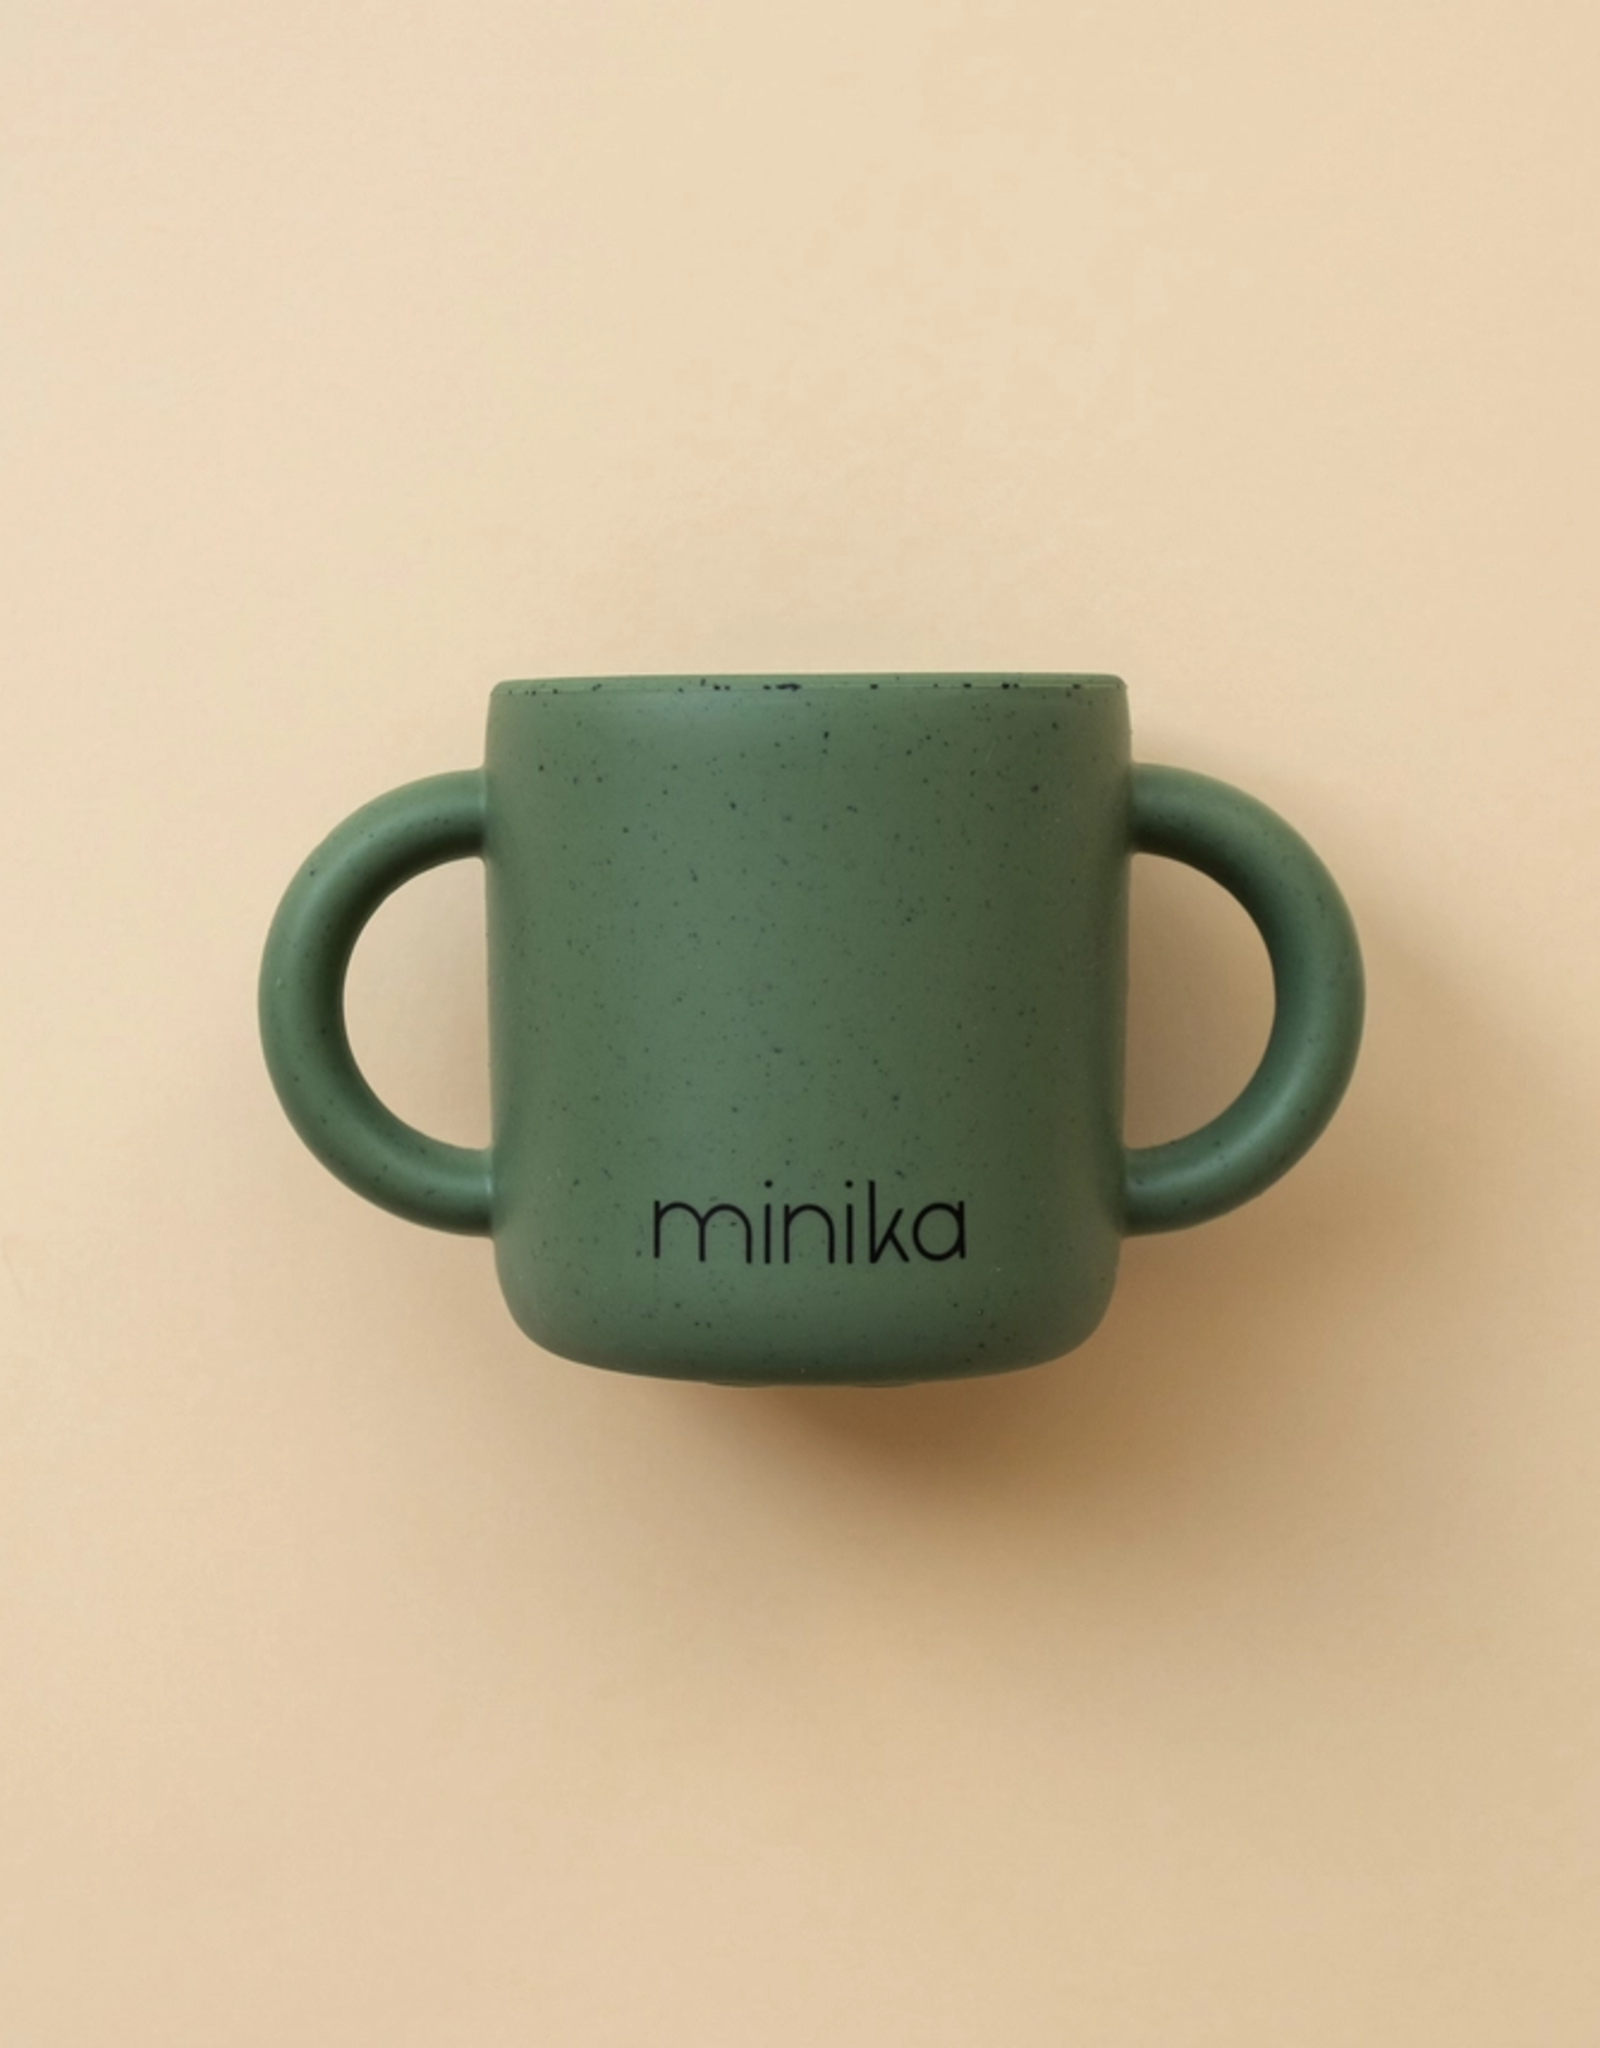 Minika Learning Cup w/Handles, Leaf